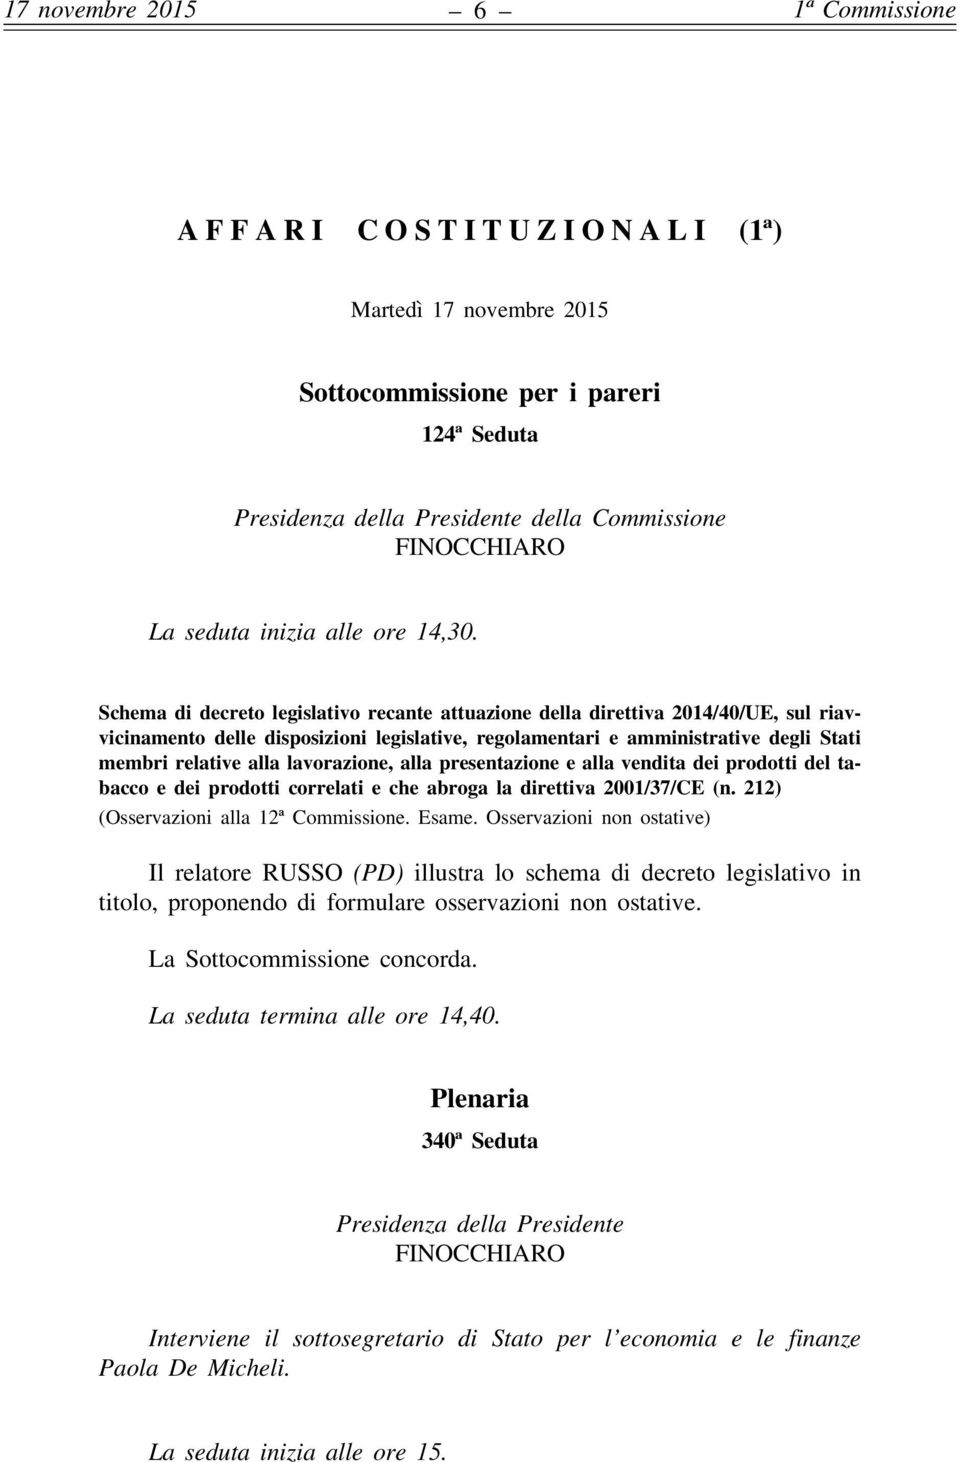 Schema di decreto legislativo recante attuazione della direttiva 2014/40/UE, sul riavvicinamento delle disposizioni legislative, regolamentari e amministrative degli Stati membri relative alla